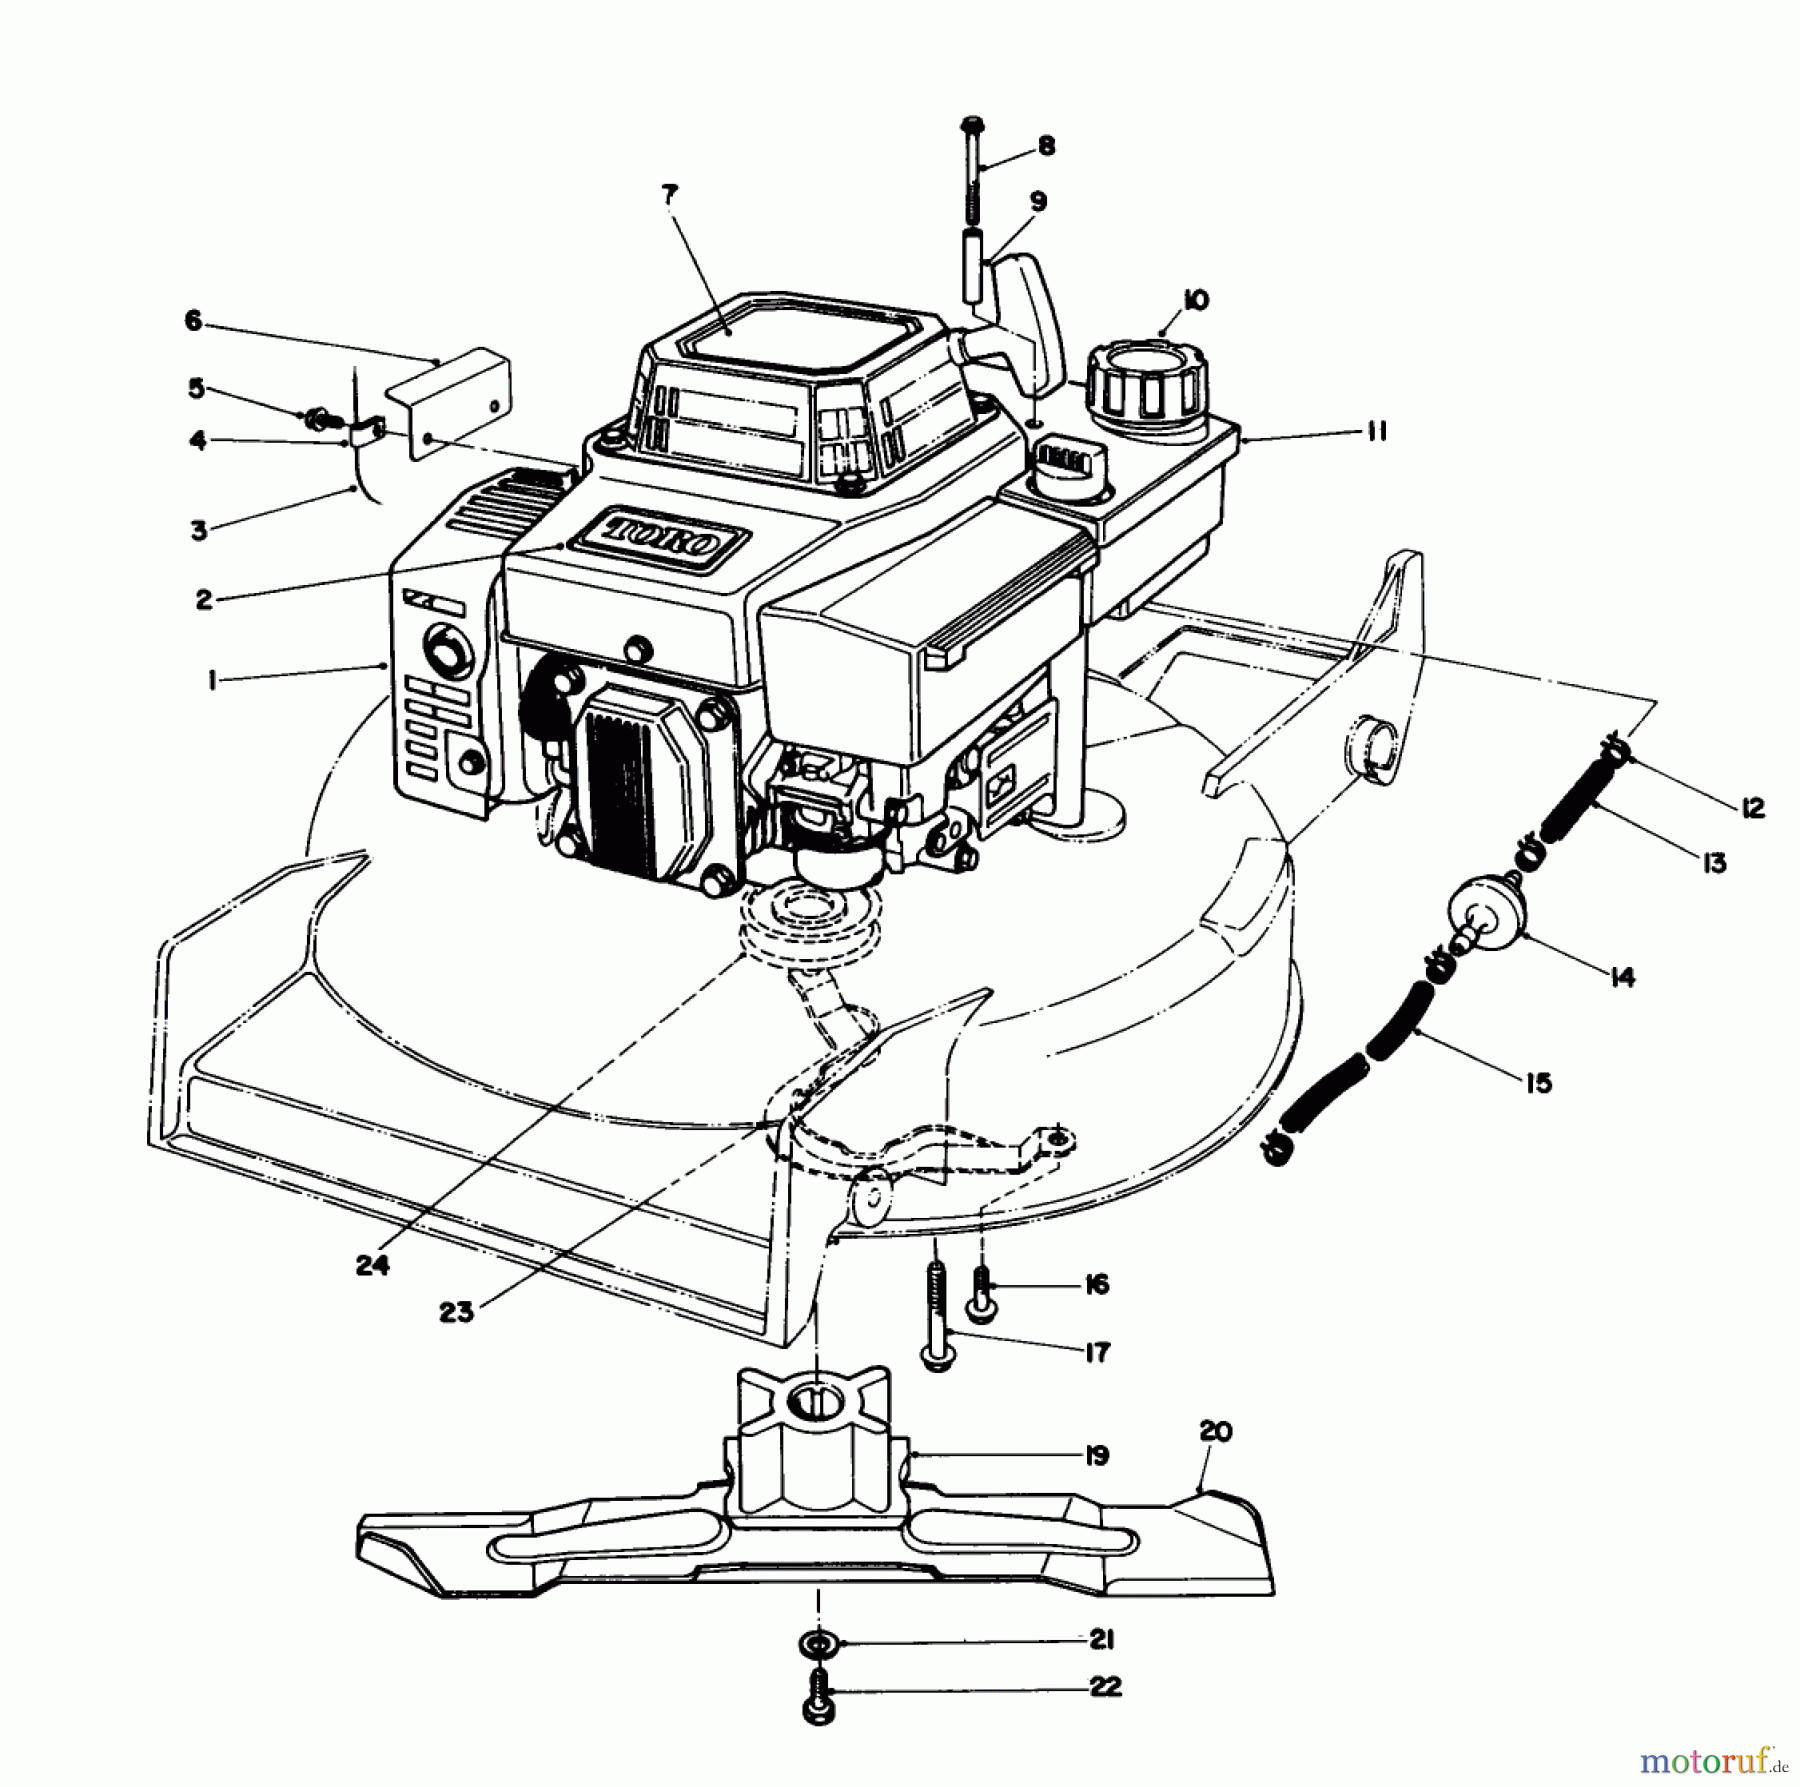  Toro Neu Mowers, Walk-Behind Seite 1 20627C - Toro Lawnmower, 1988 (8000001-8999999) ENGINE ASSEMBLY #1